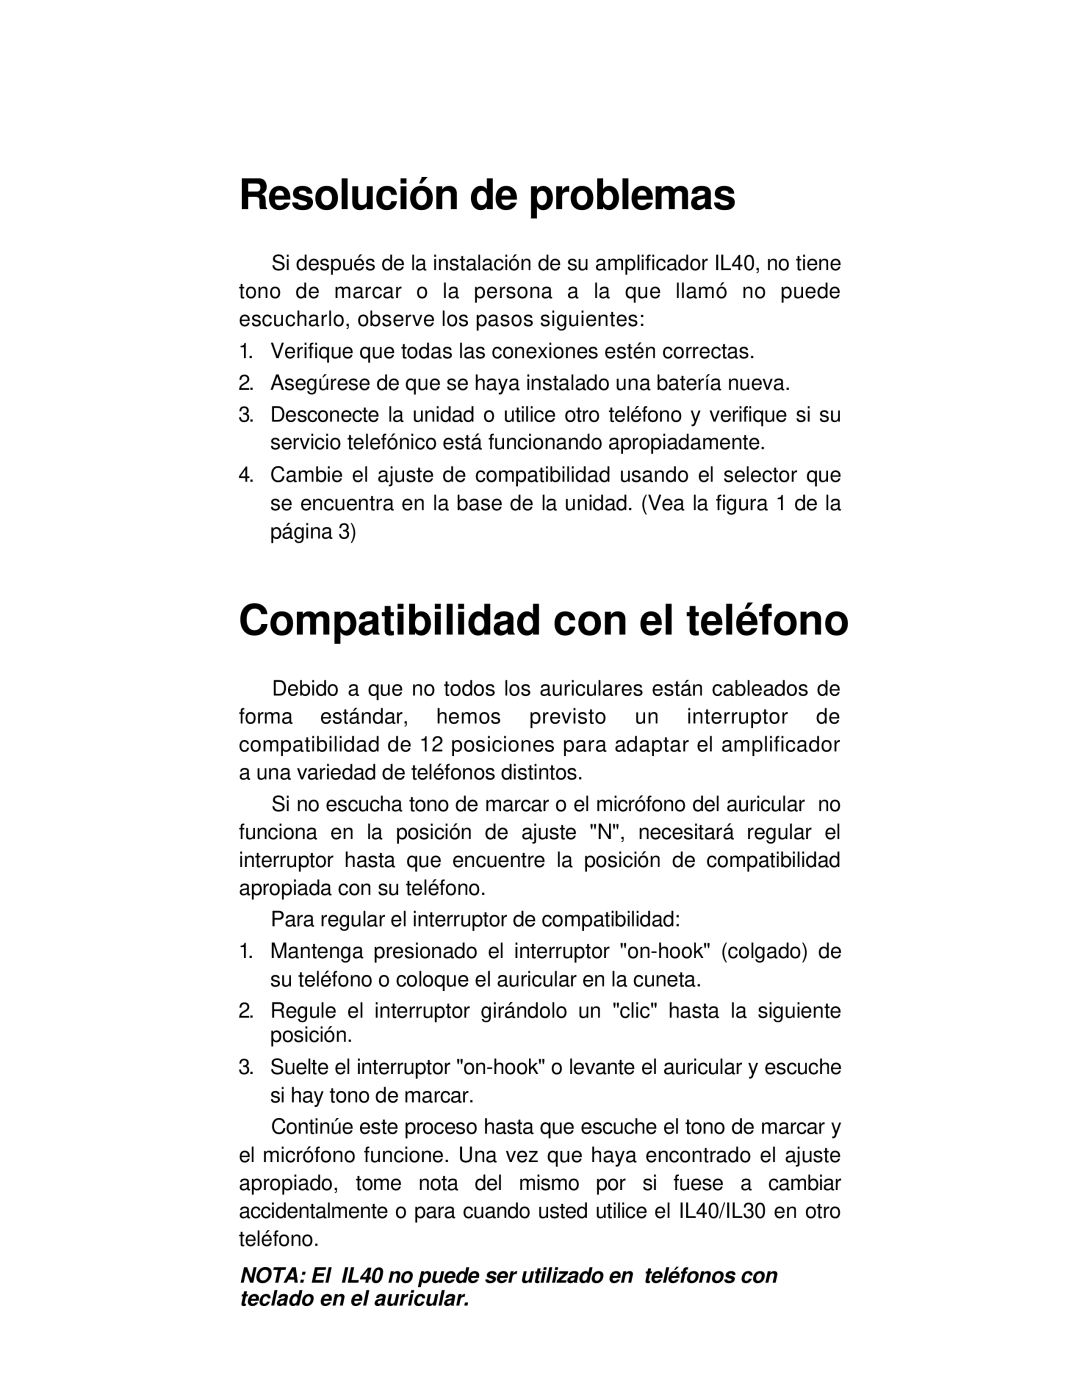 ClearSounds IL40 manual Resolución de problemas, Compatibilidad con el teléfono 